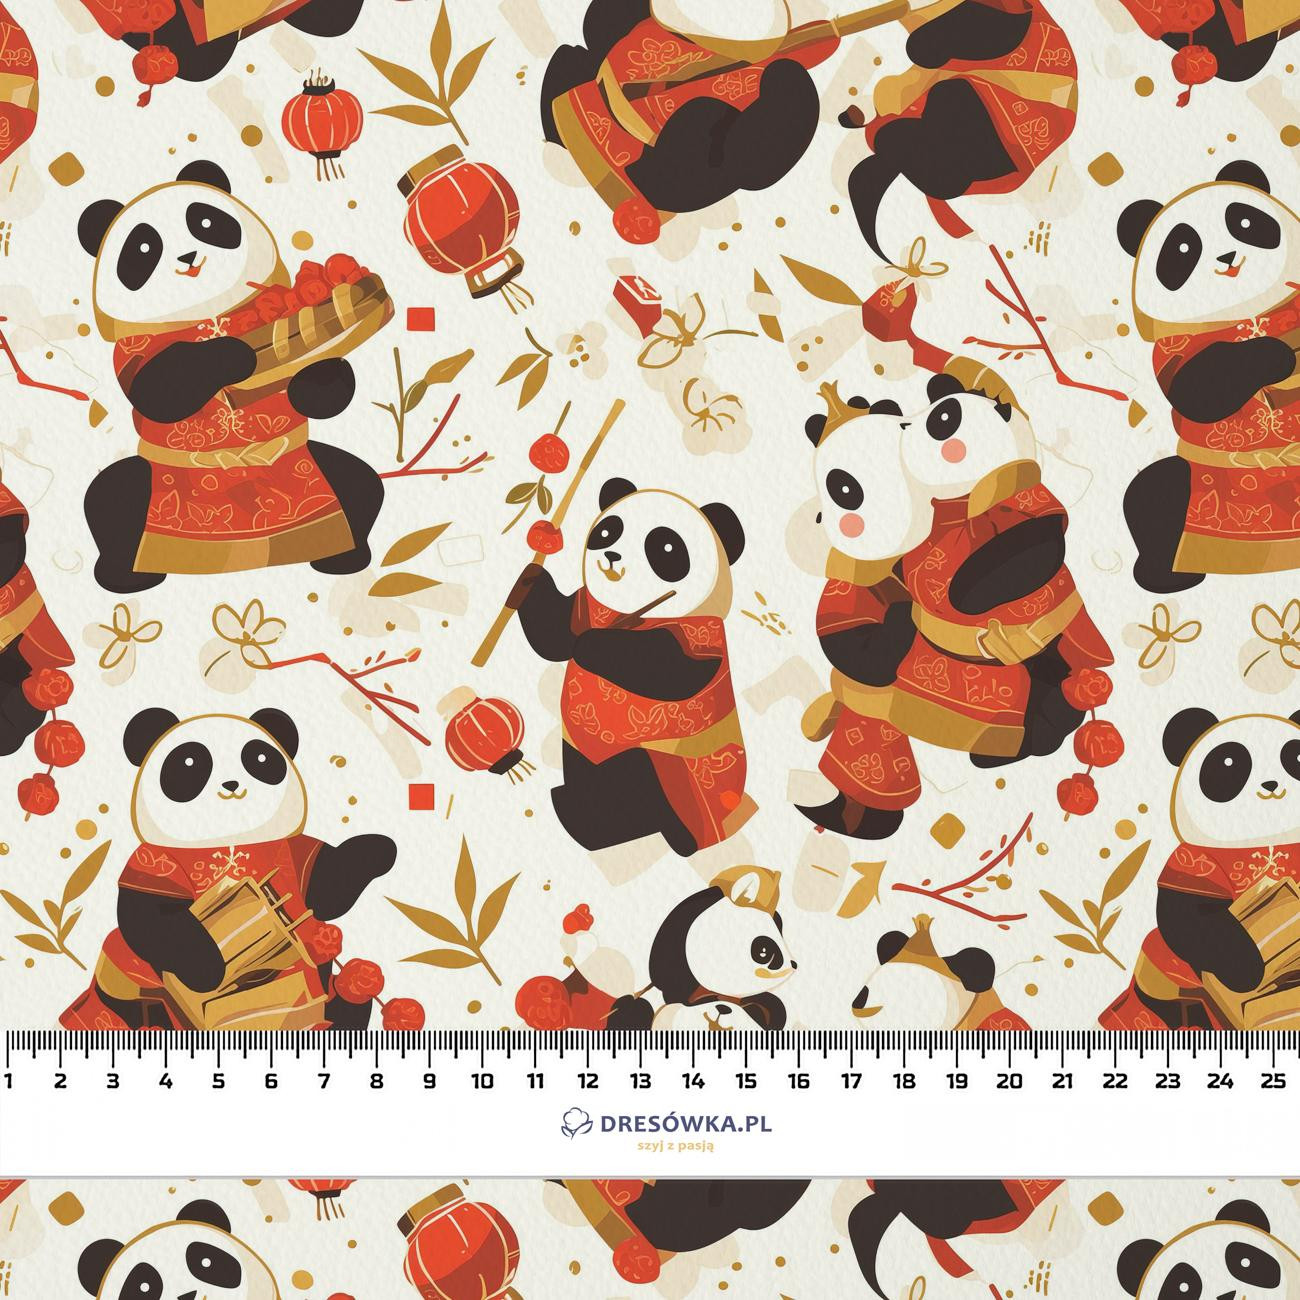 CHINESE PANDAS - Cotton woven fabric